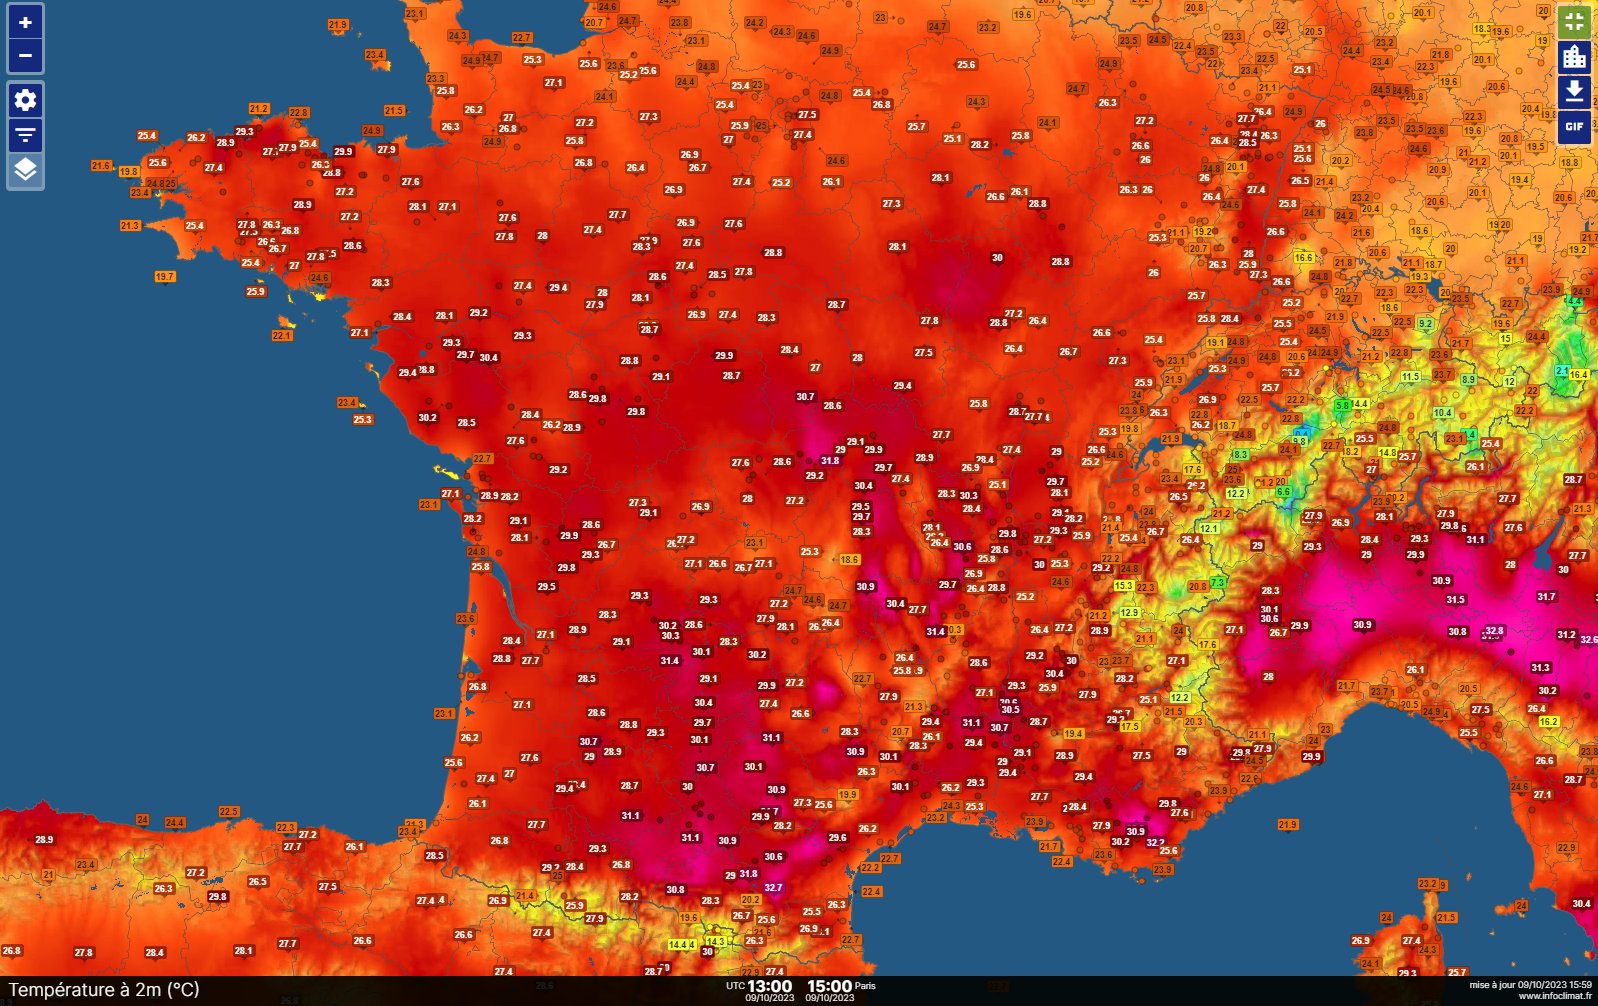 <p>Chaleur - La station de Lyon-Bron, ouverte il y a plus de 100 ans n'avait jamais atteint les 30°C en octobre, c'est désormais chose faite. Au Mont Aigoual (ouverte en 1895), record mensuel de minimale (15.8°C) et de maximale (21.2°C provisoire), ce 9 octobre est le jour d'octobre le plus chaud.</p>